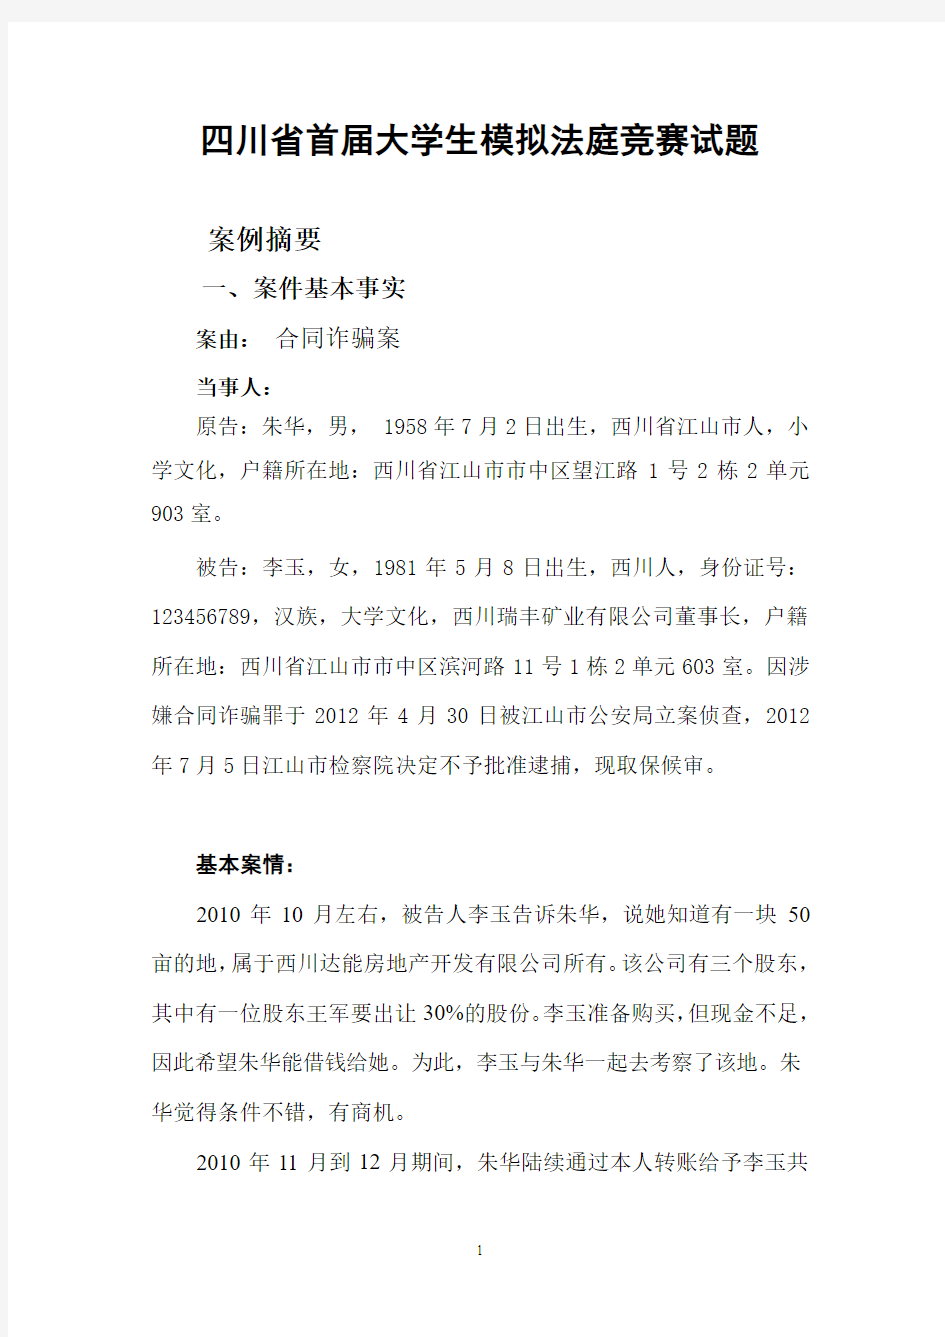 四川省首届大学生模拟法庭竞赛试题(发布)